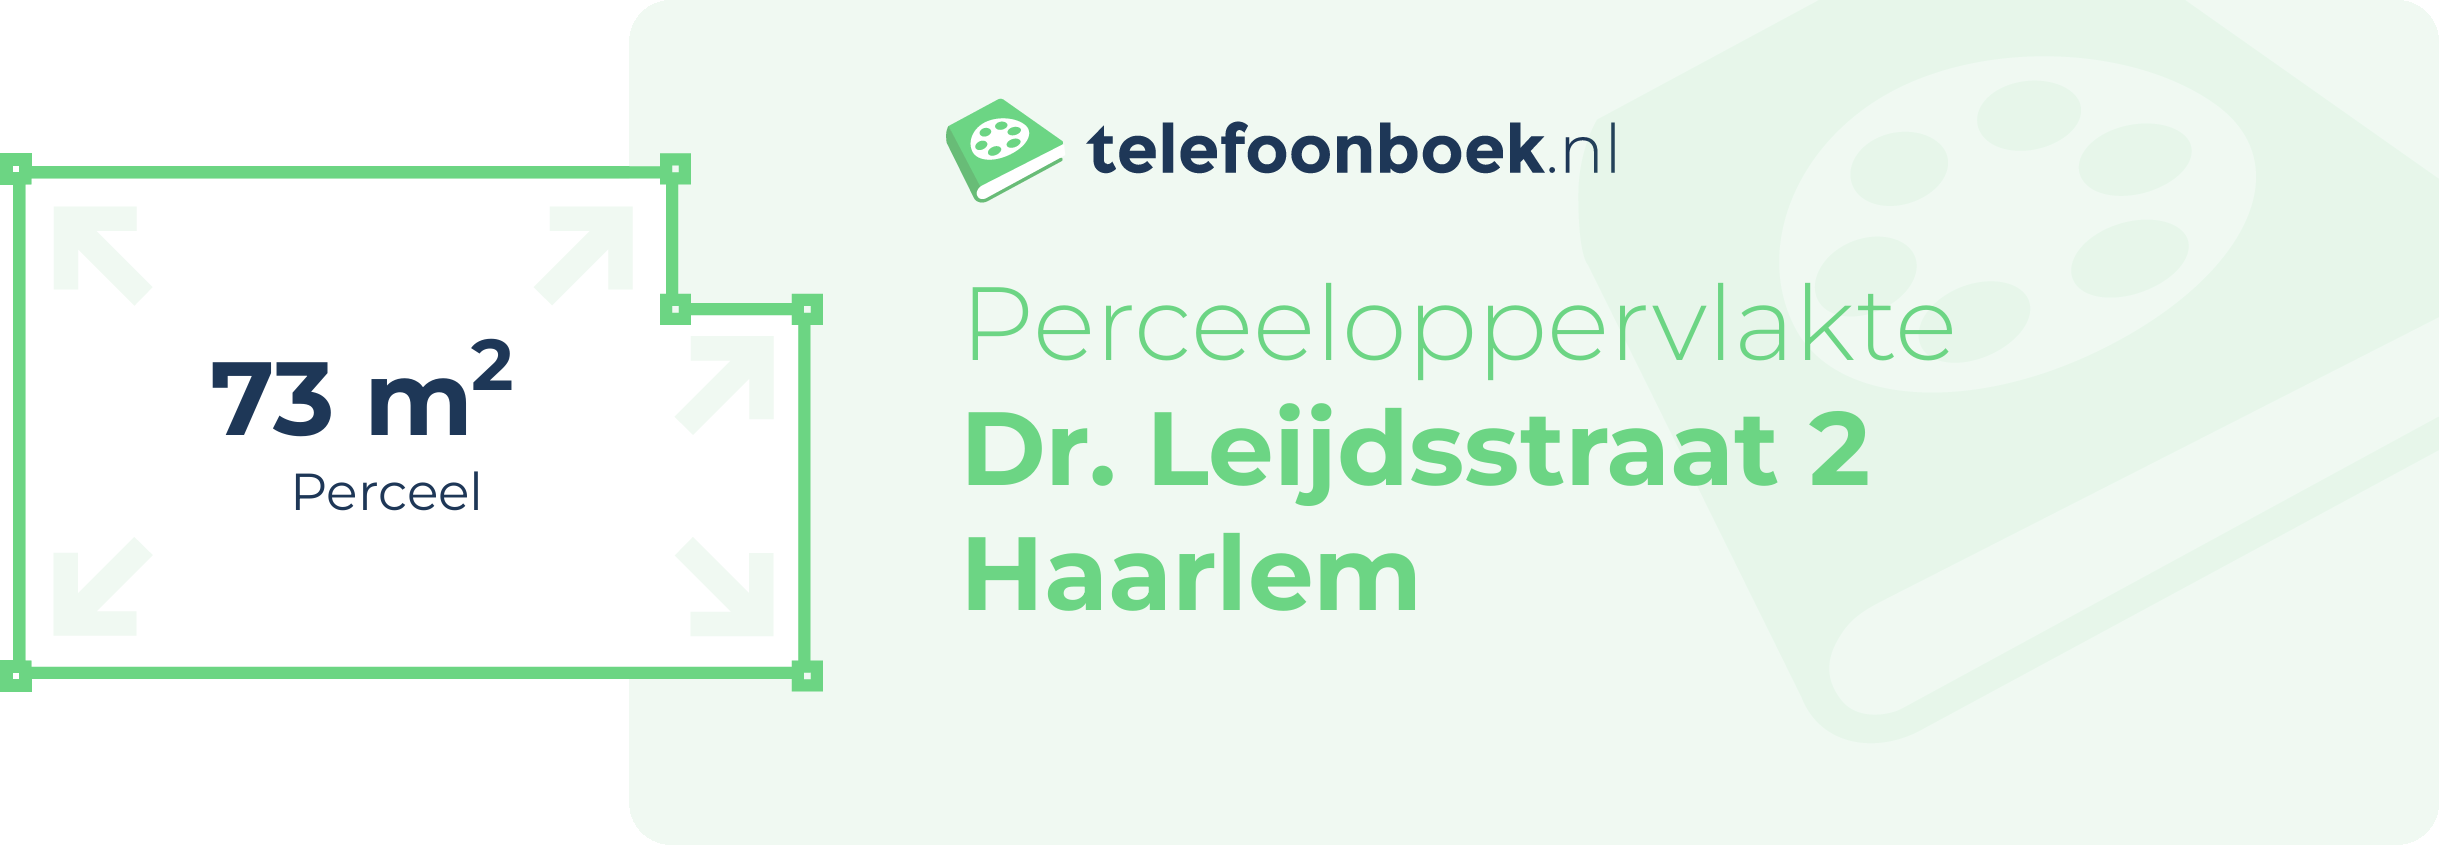 Perceeloppervlakte Dr. Leijdsstraat 2 Haarlem